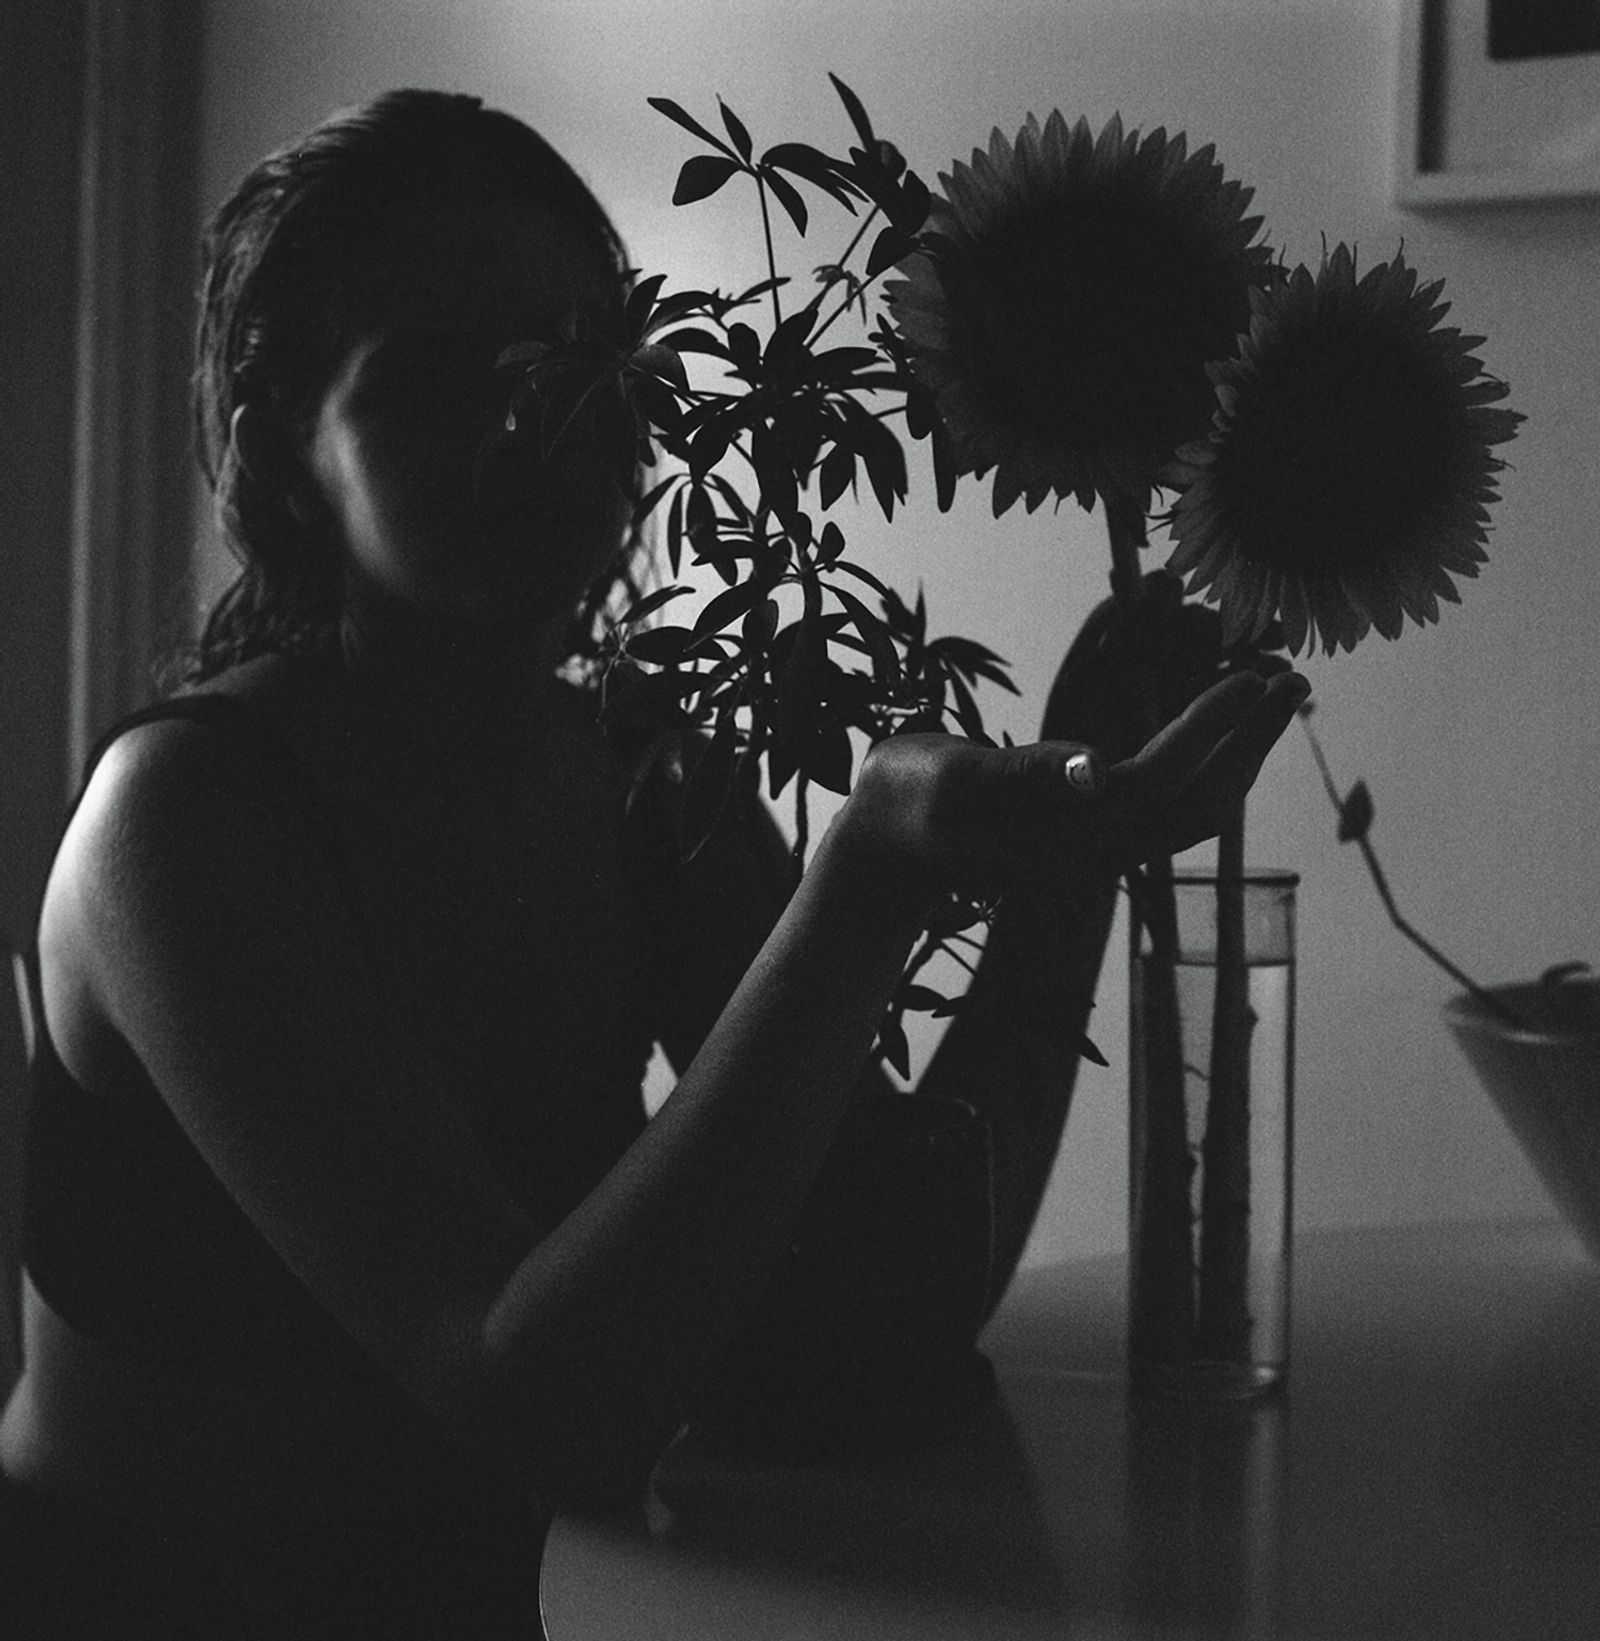 © Alana Celii - Rachel with Sunflowers, 2013